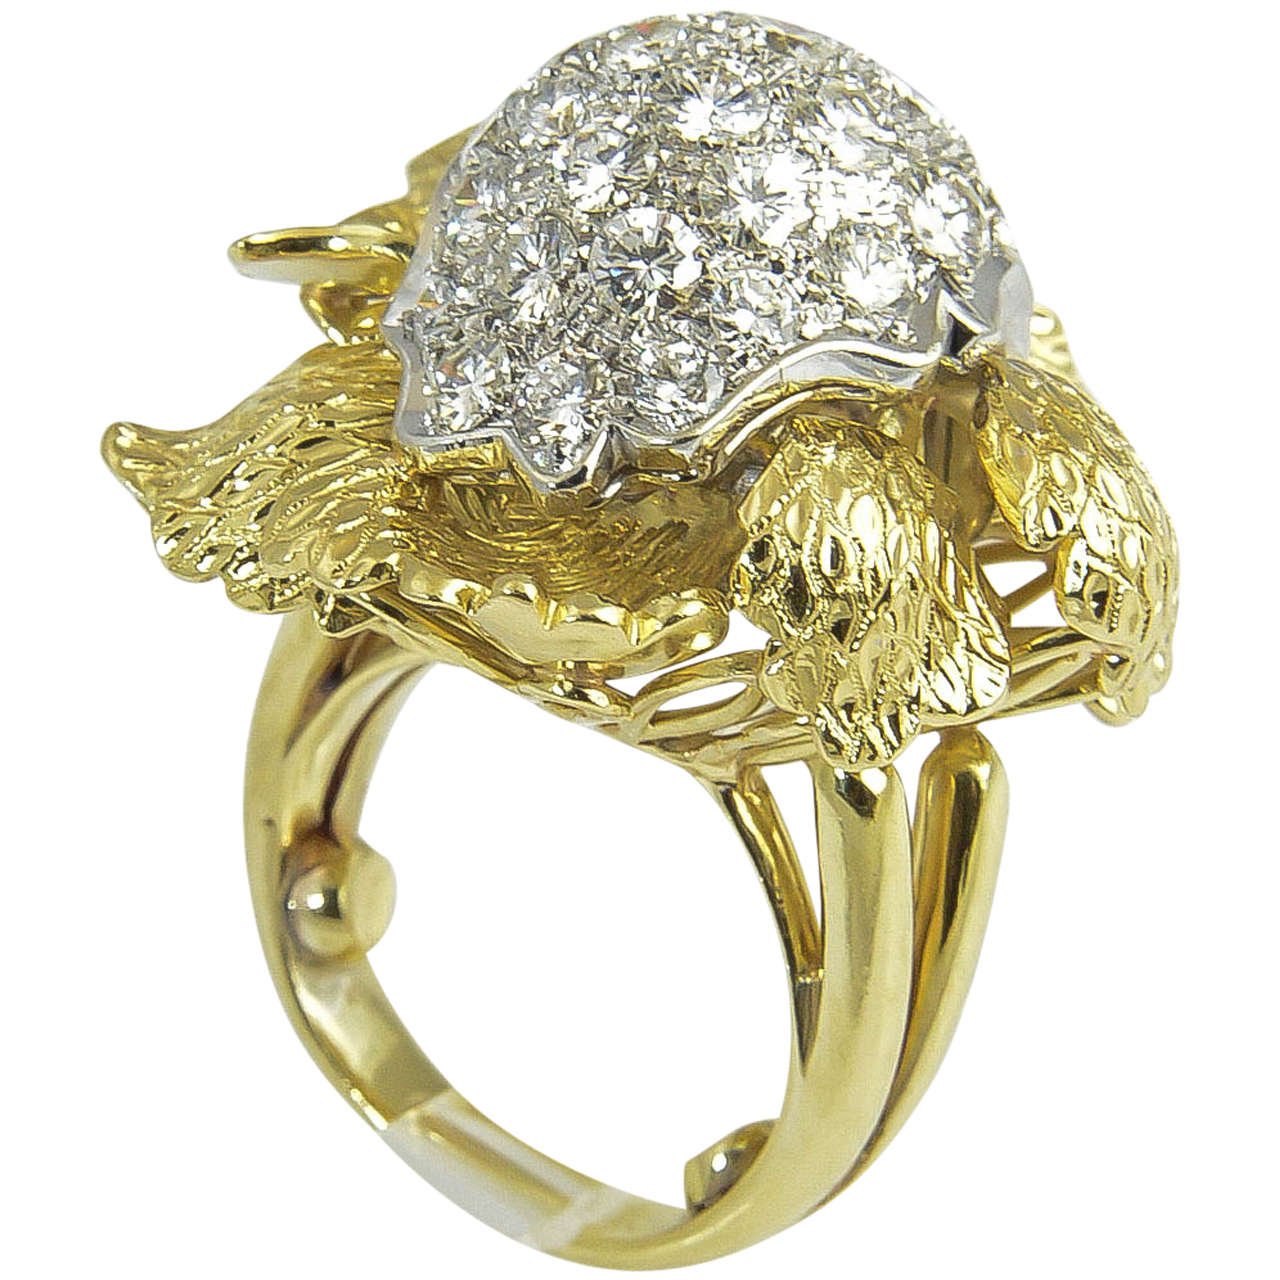 Beeindruckender Ring mit 2,25 ct. schönen Diamanten, die in strukturierte Blütenblätter aus 18 Karat Gelbgold eingefasst sind.

US-Größe 6 (kann wegen der Kugeln, die das Umklappen verhindern sollen, ein wenig abweichen)  Sie kann in der Größe